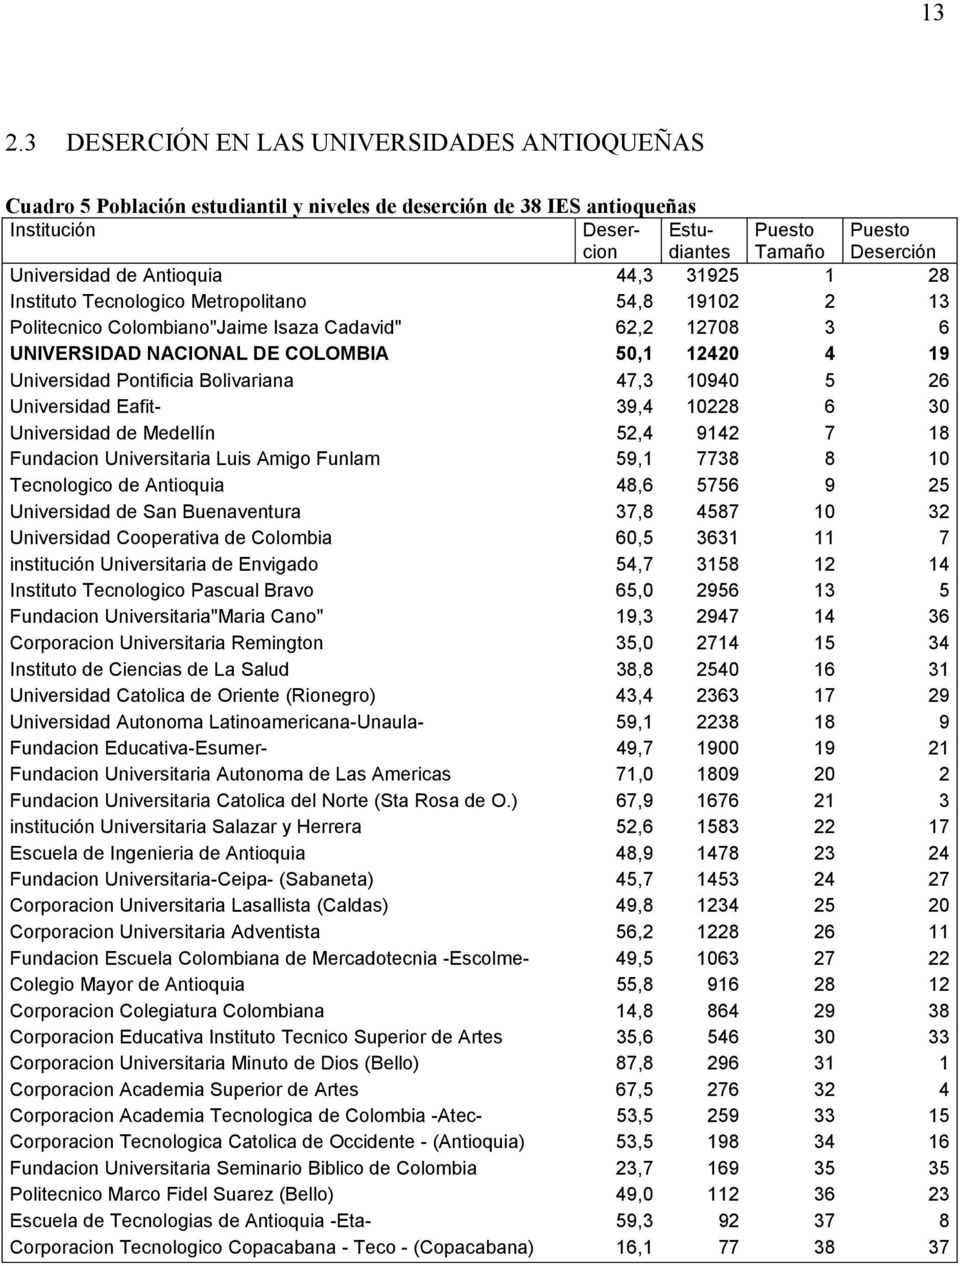 19 Universidad Pontificia Bolivariana 47,3 10940 5 26 Universidad Eafit- 39,4 10228 6 30 Universidad de Medellín 52,4 9142 7 18 Fundacion Universitaria Luis Amigo Funlam 59,1 7738 8 10 Tecnologico de